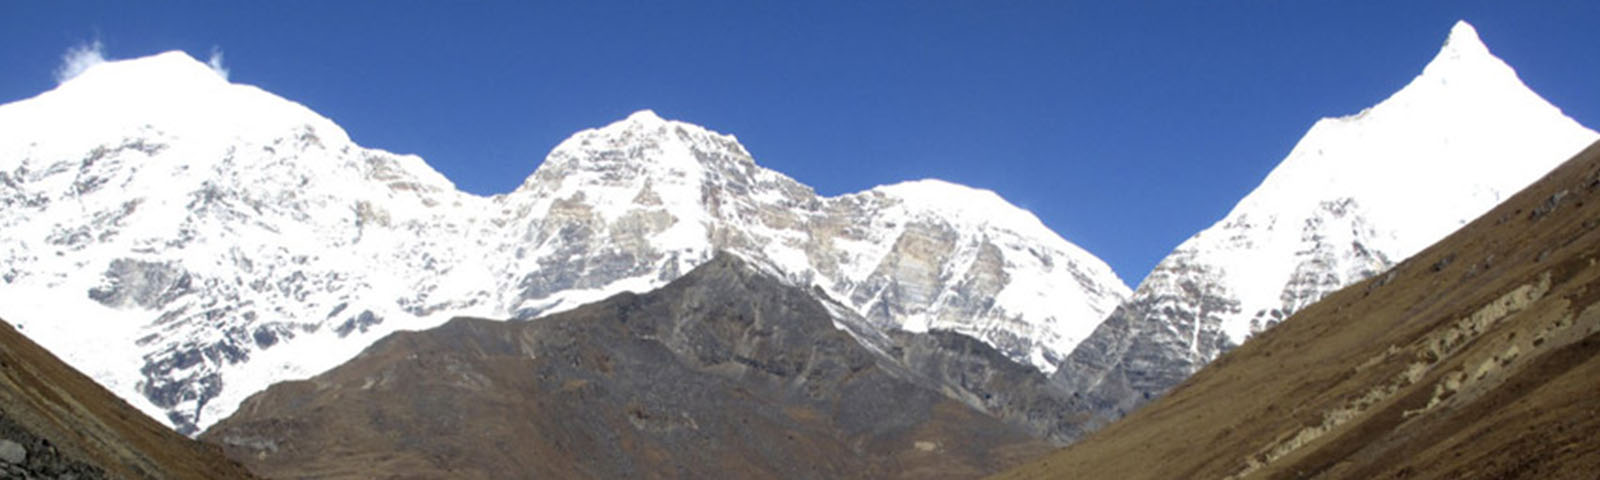 Bhutan Jumolhari Trek